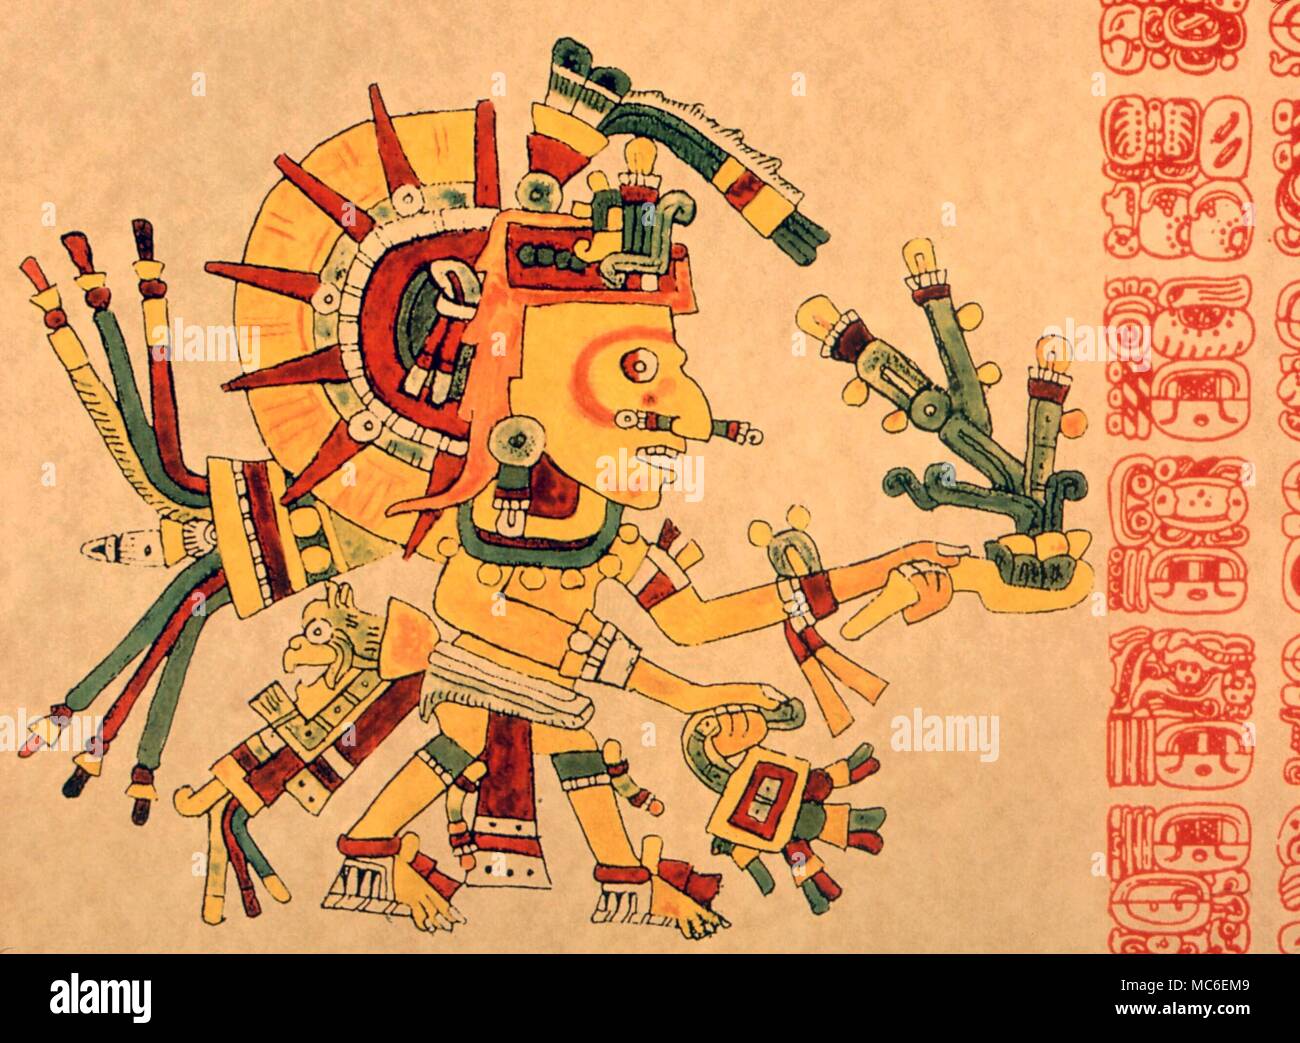 Kalender - (Aztec) Gott der Sonne (tonatiuh) der Maya astrologische System, mit calendric Glyphen. Artwork (Bild) nach dem Codex Cospi (glyphen) von Copan, wie von Zimmermann aufgezeichnet Stockfoto